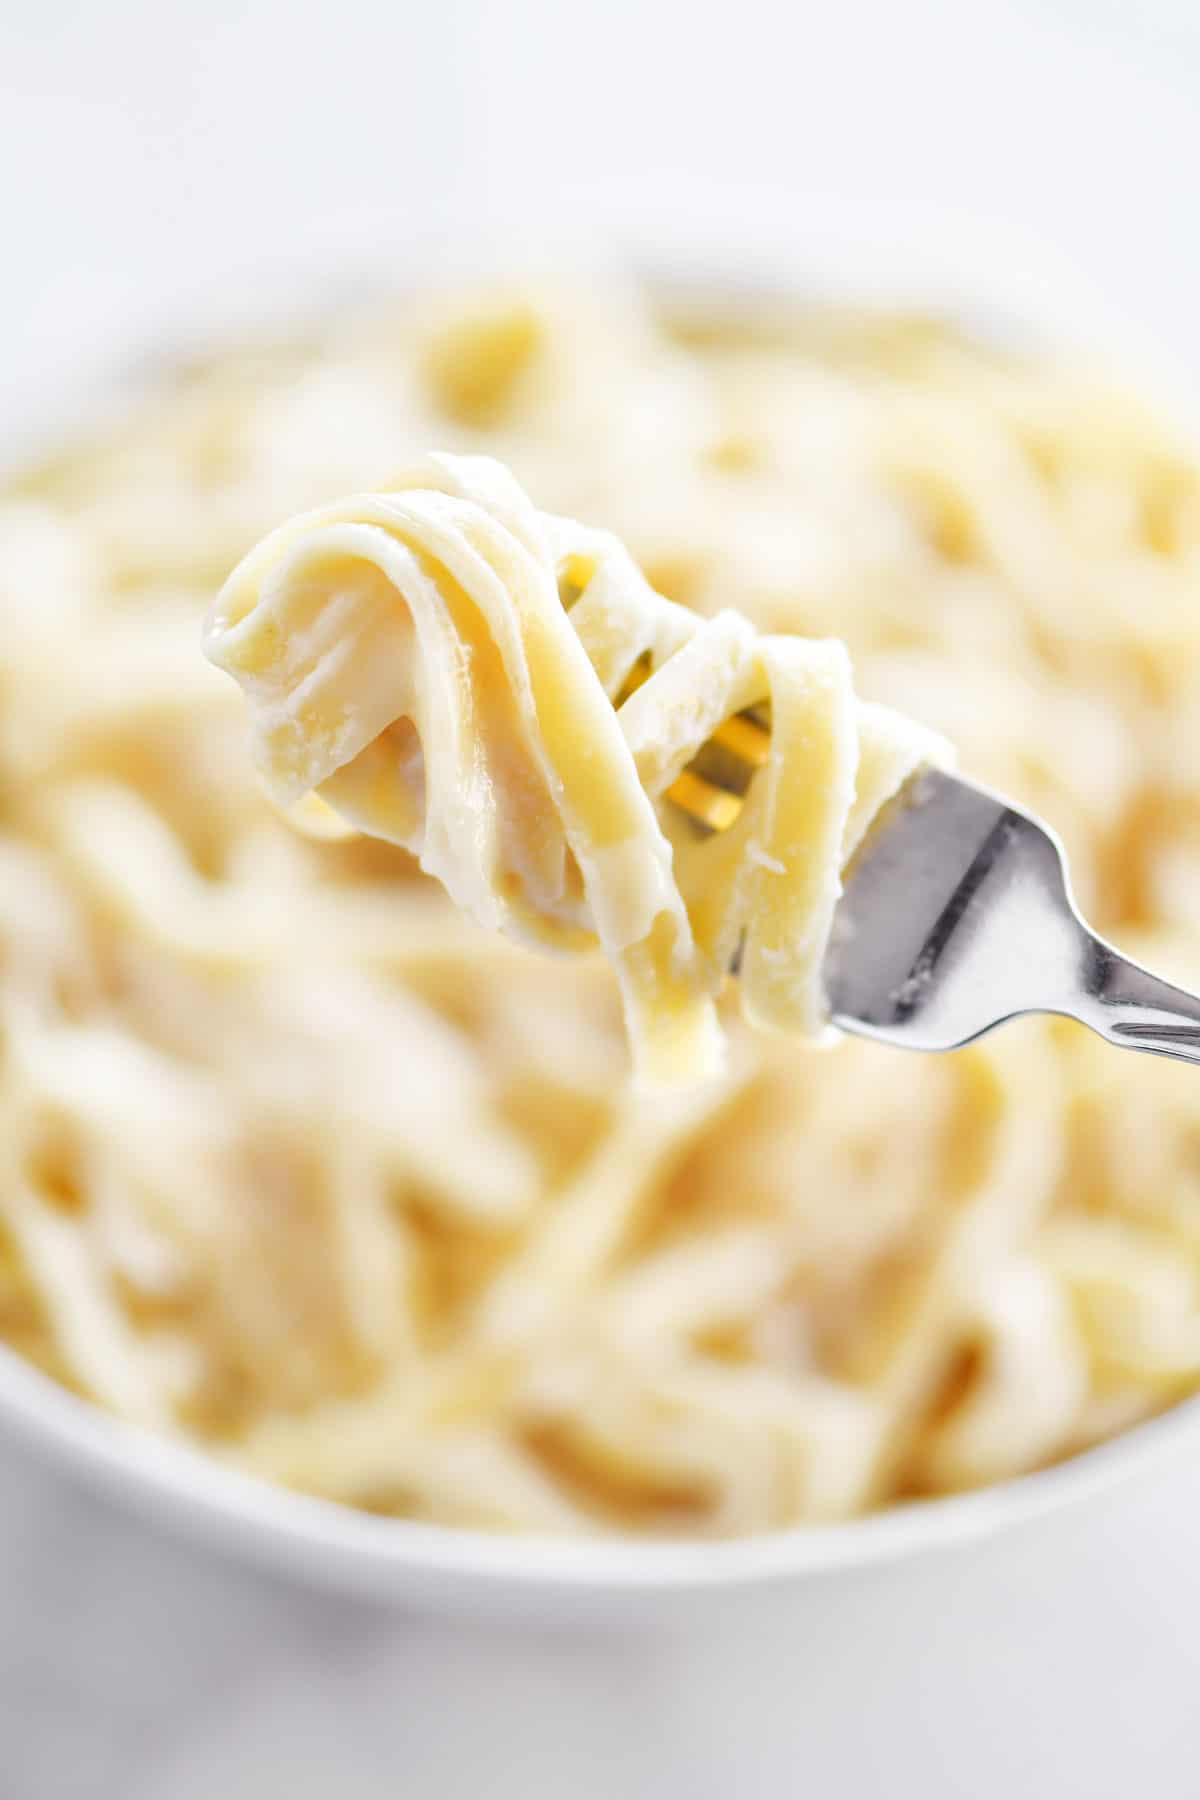 pasta twirled around a fork